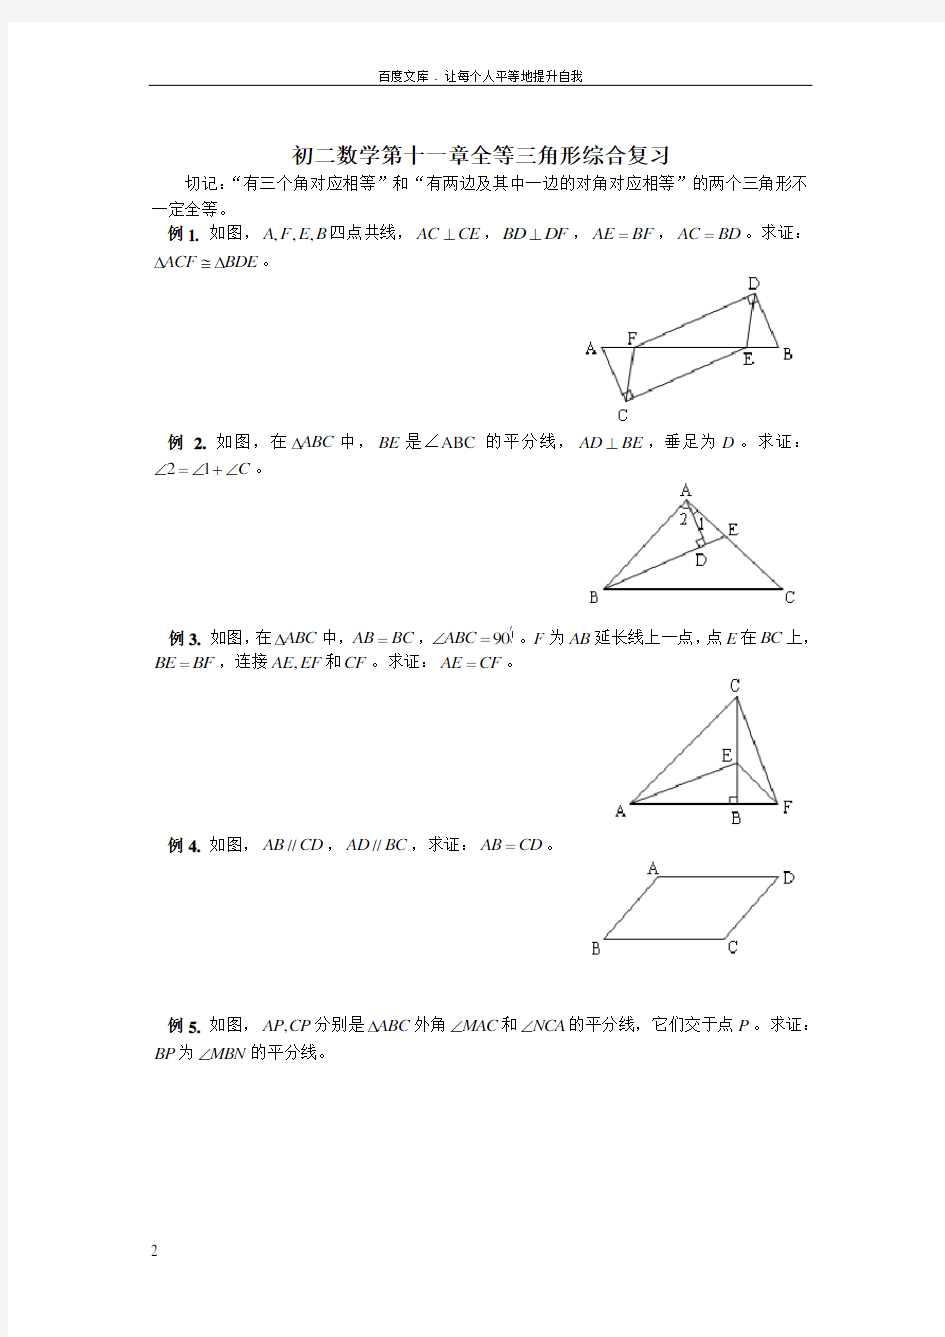 全等三角形重点题型(供参考)